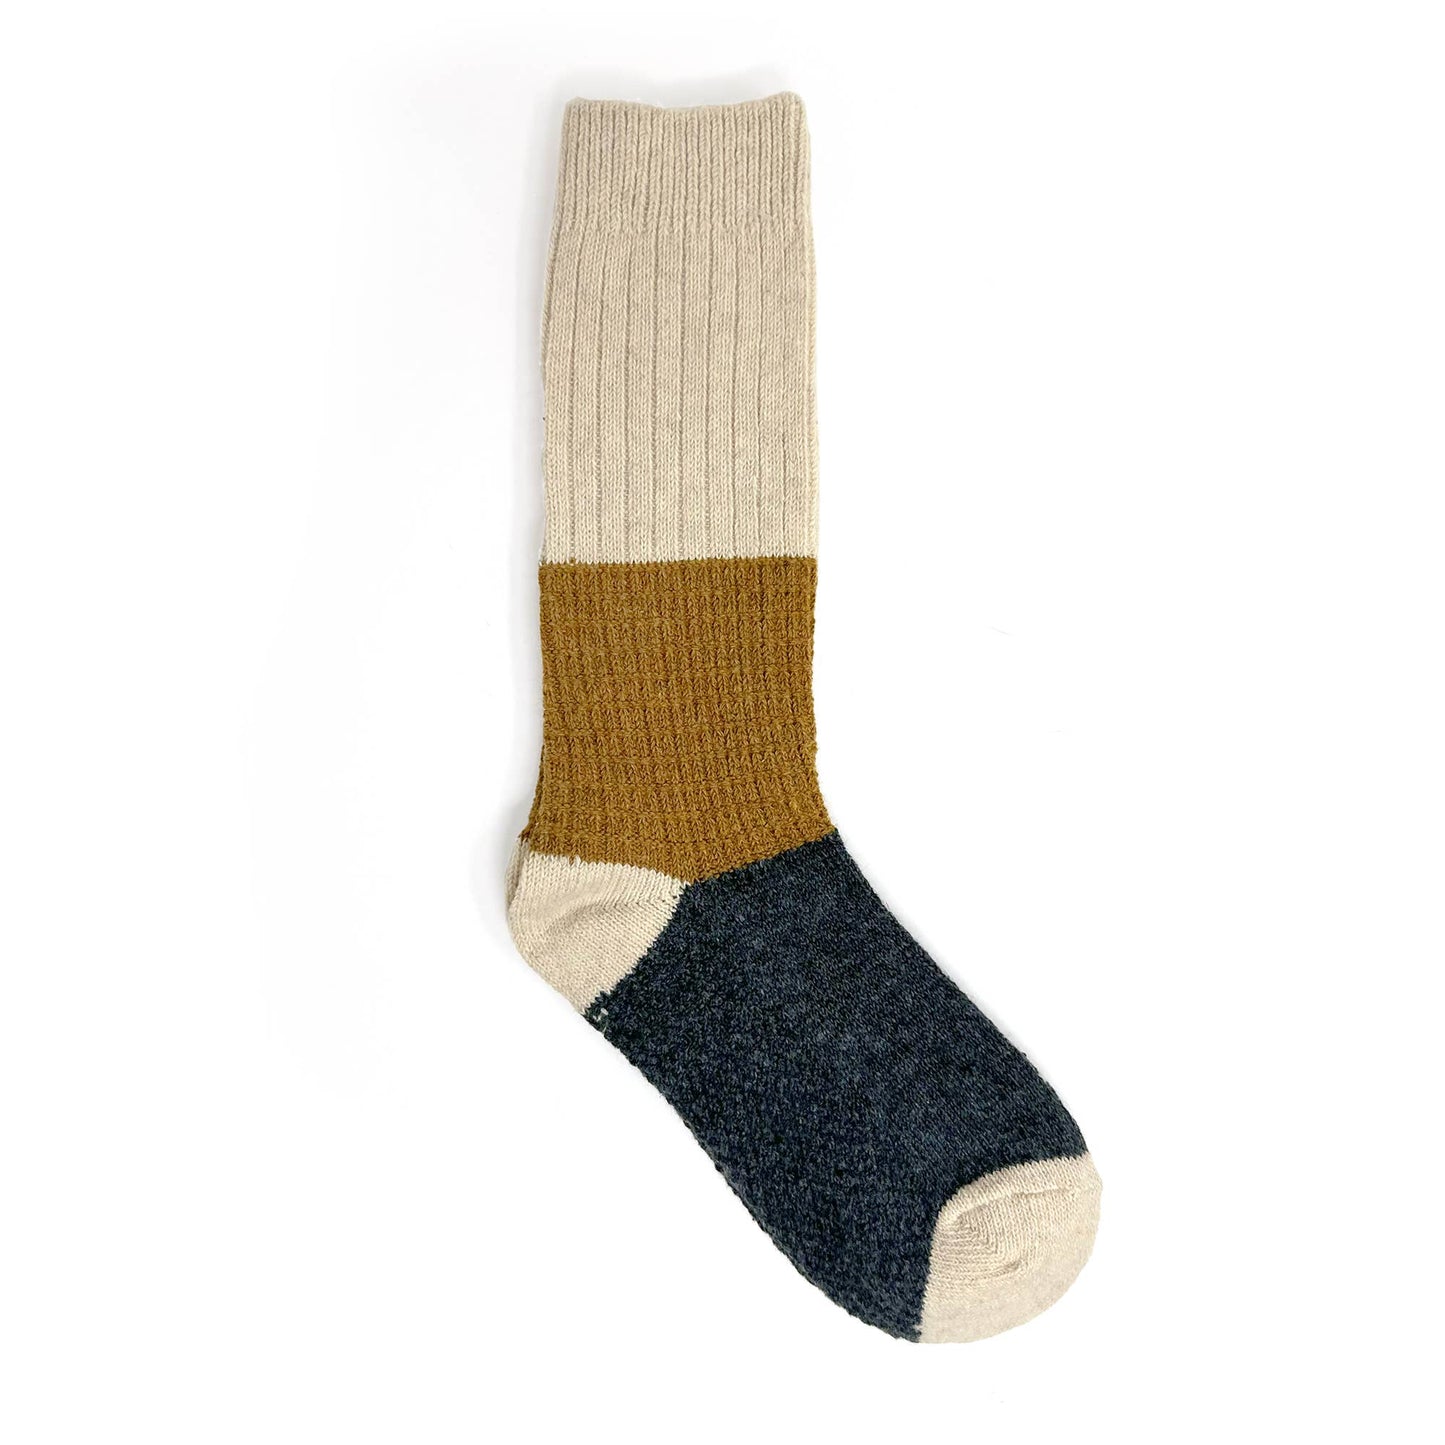 Ryder Color Block Socks: Beige / Red / Blue